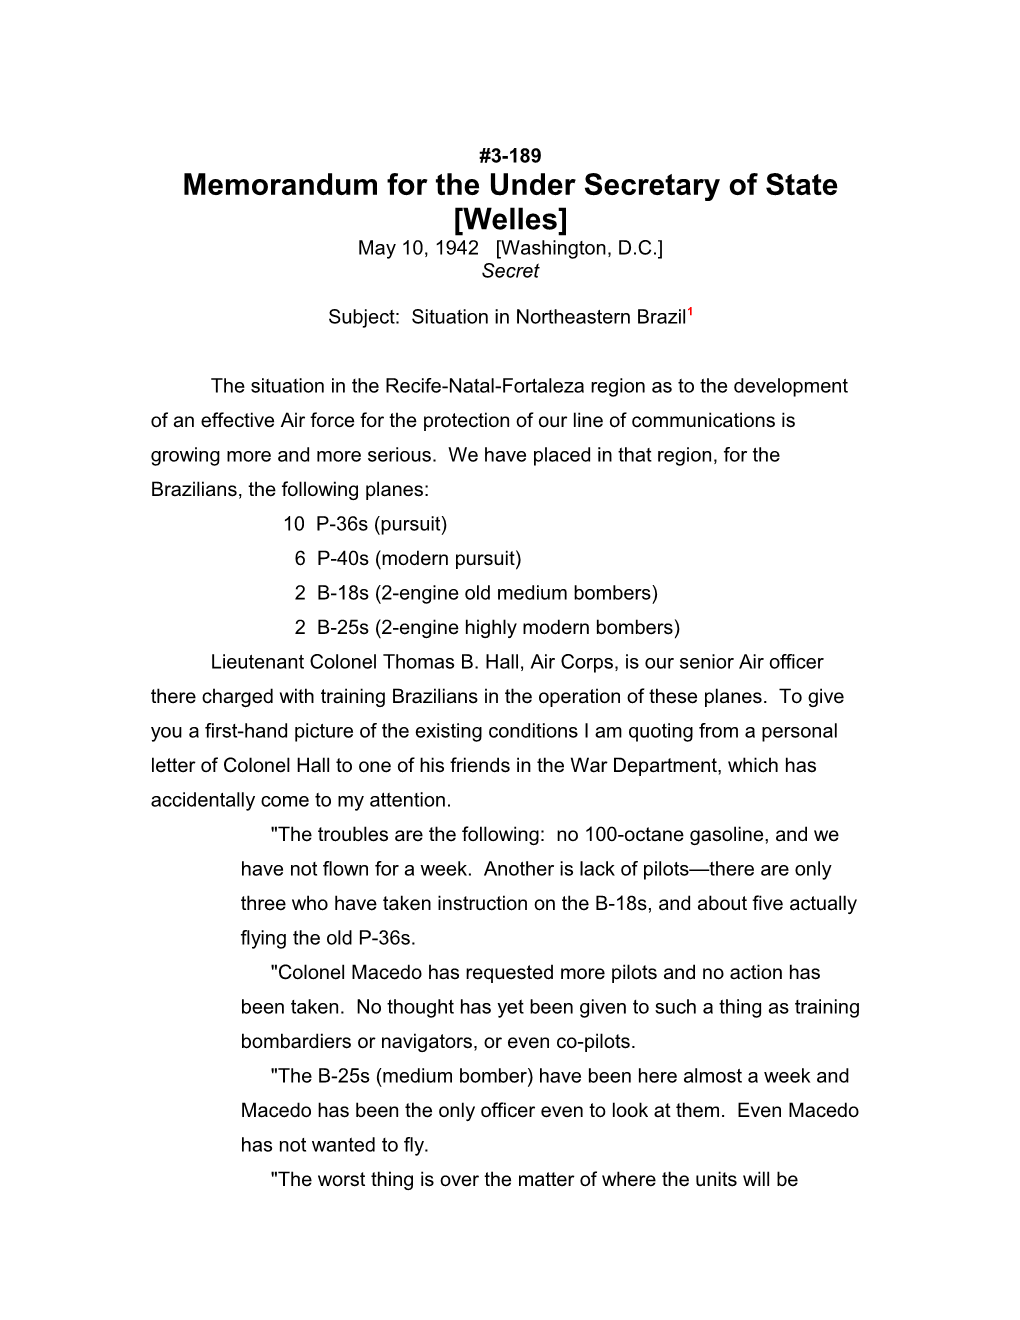 Memorandum for the Under Secretary of State Welles